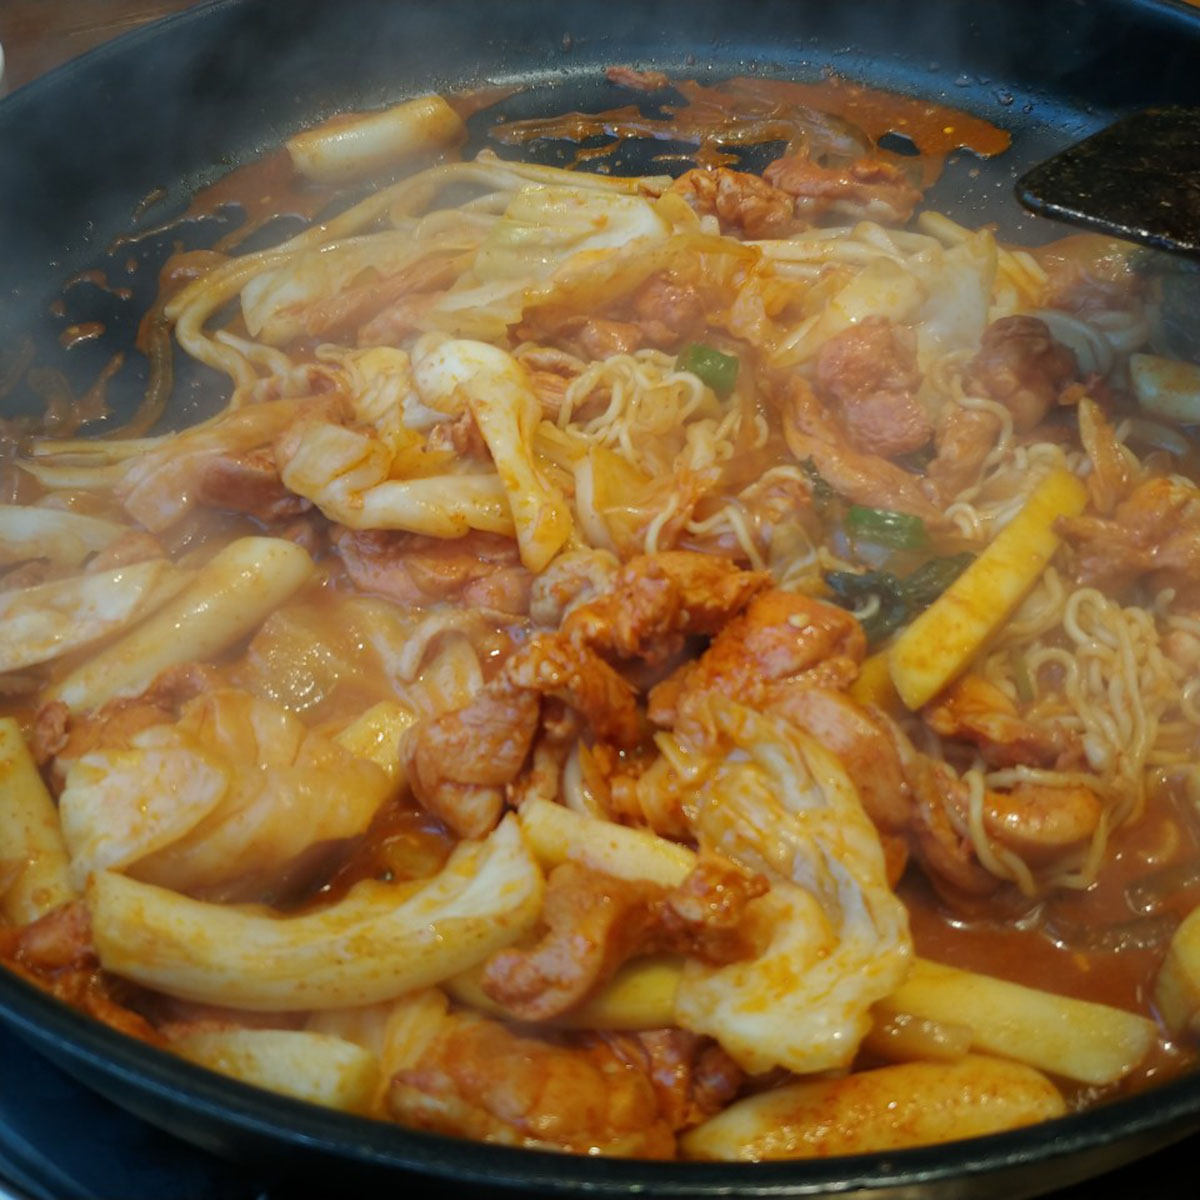 韓国で新鮮な鶏肉が食べ放題!? 大人気の「タッカルビ製作所」